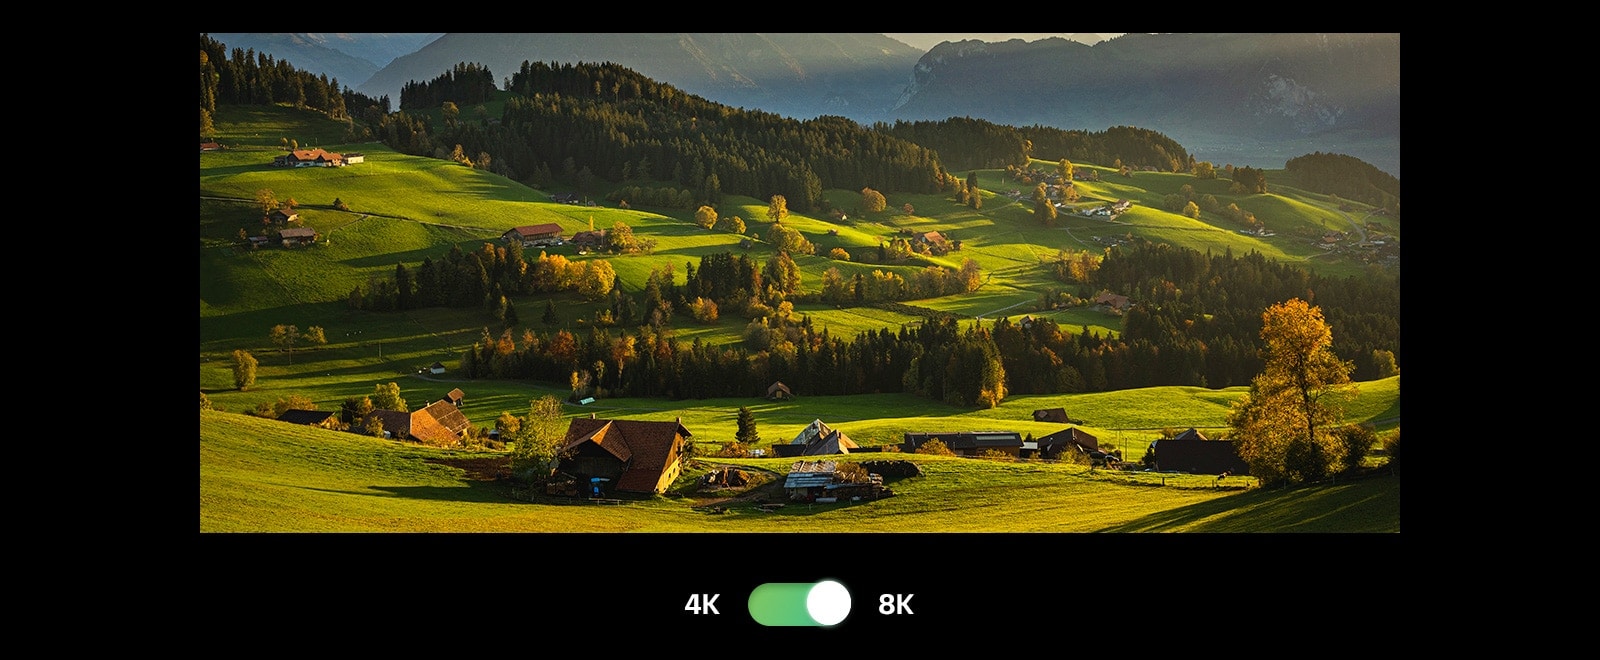 Vista panoramica di un campo coltivato con il cielo sullo sfondo. Sotto all’immagine, è presente un pulsante con la dicitura 4K a sinistra e 8K a destra. L’immagine diventa più luminosa quando il pulsante passa a 8K.